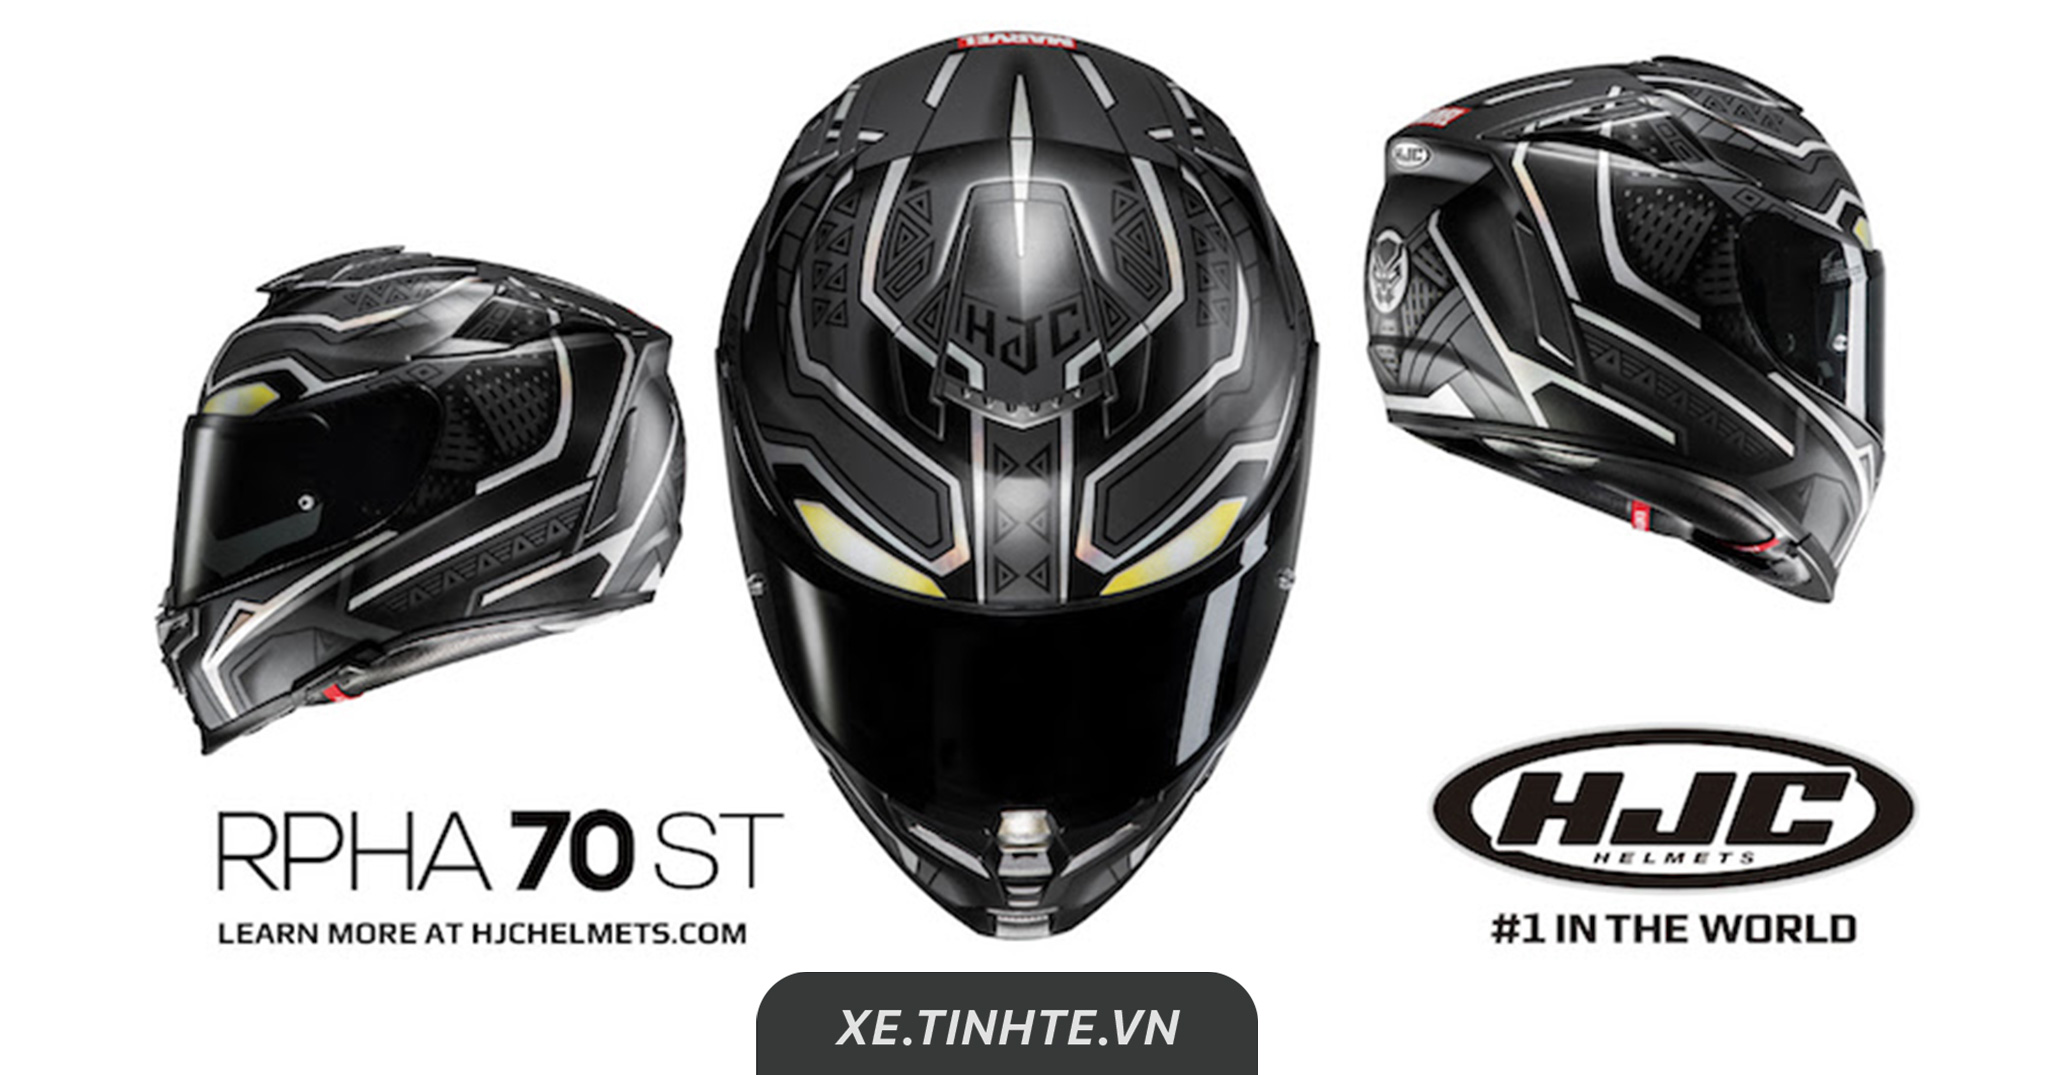 HJC Helmet giới thiệu nón bảo hiểm Black Panther: thiết kế hầm hố, siêu nhẹ, giá gần $610